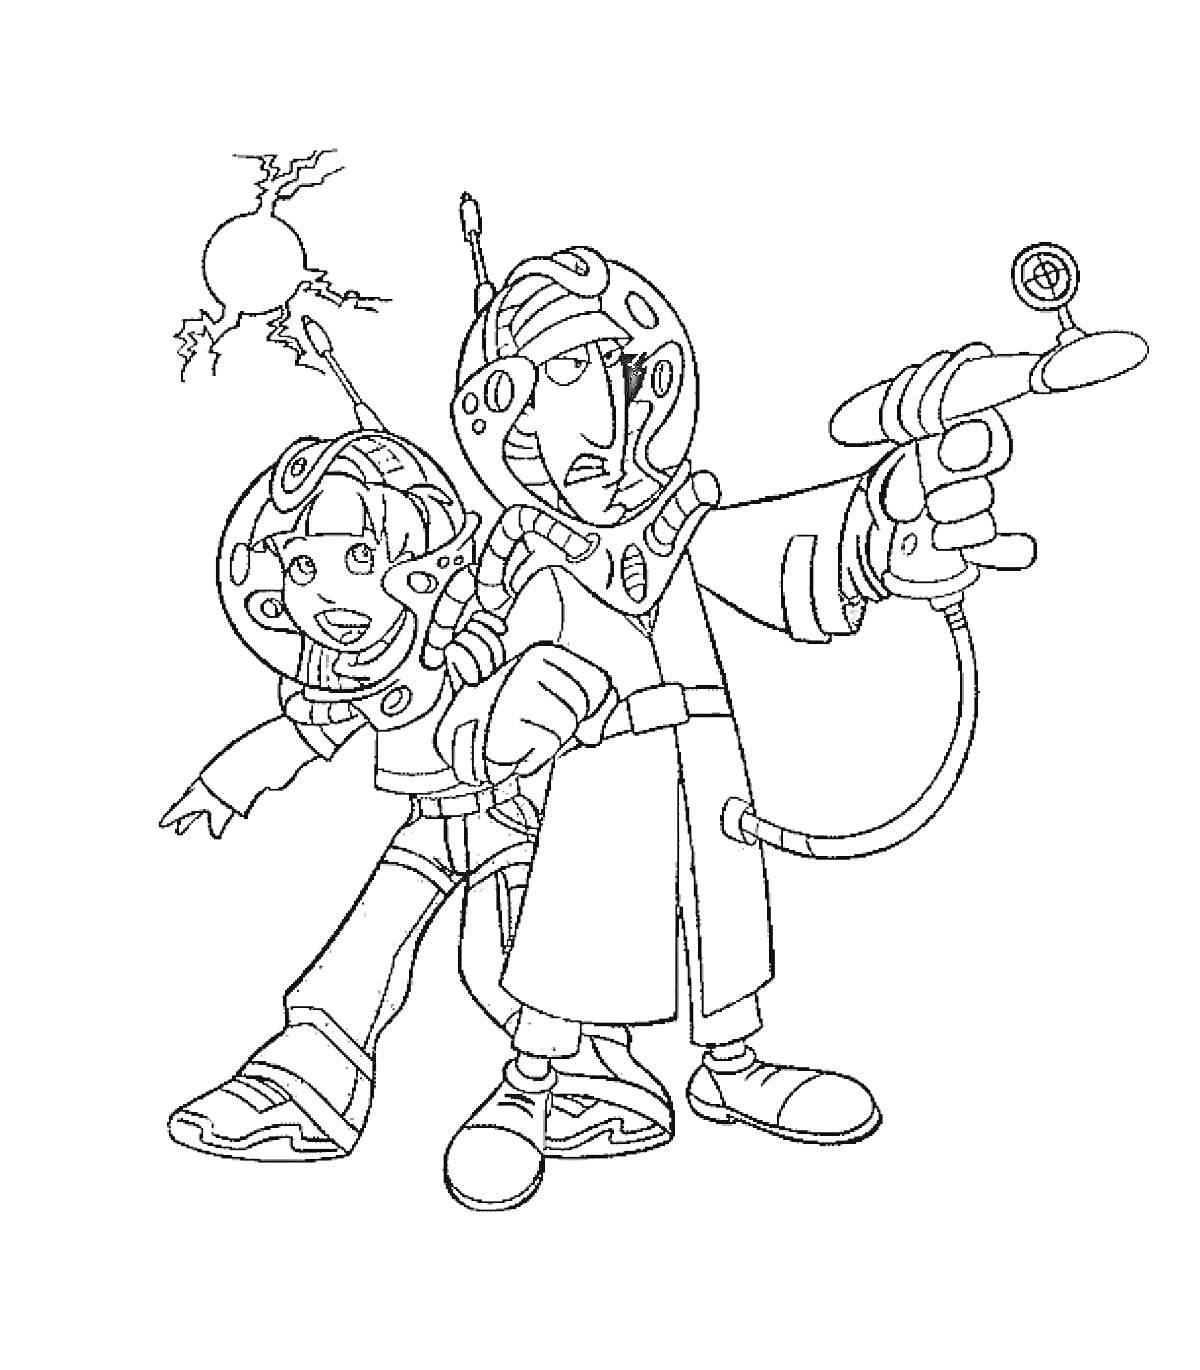 Раскраска Инспектор Гаджет и девочка в космической экипировке, с оружием и антеннами на шлемах на фоне взрыва